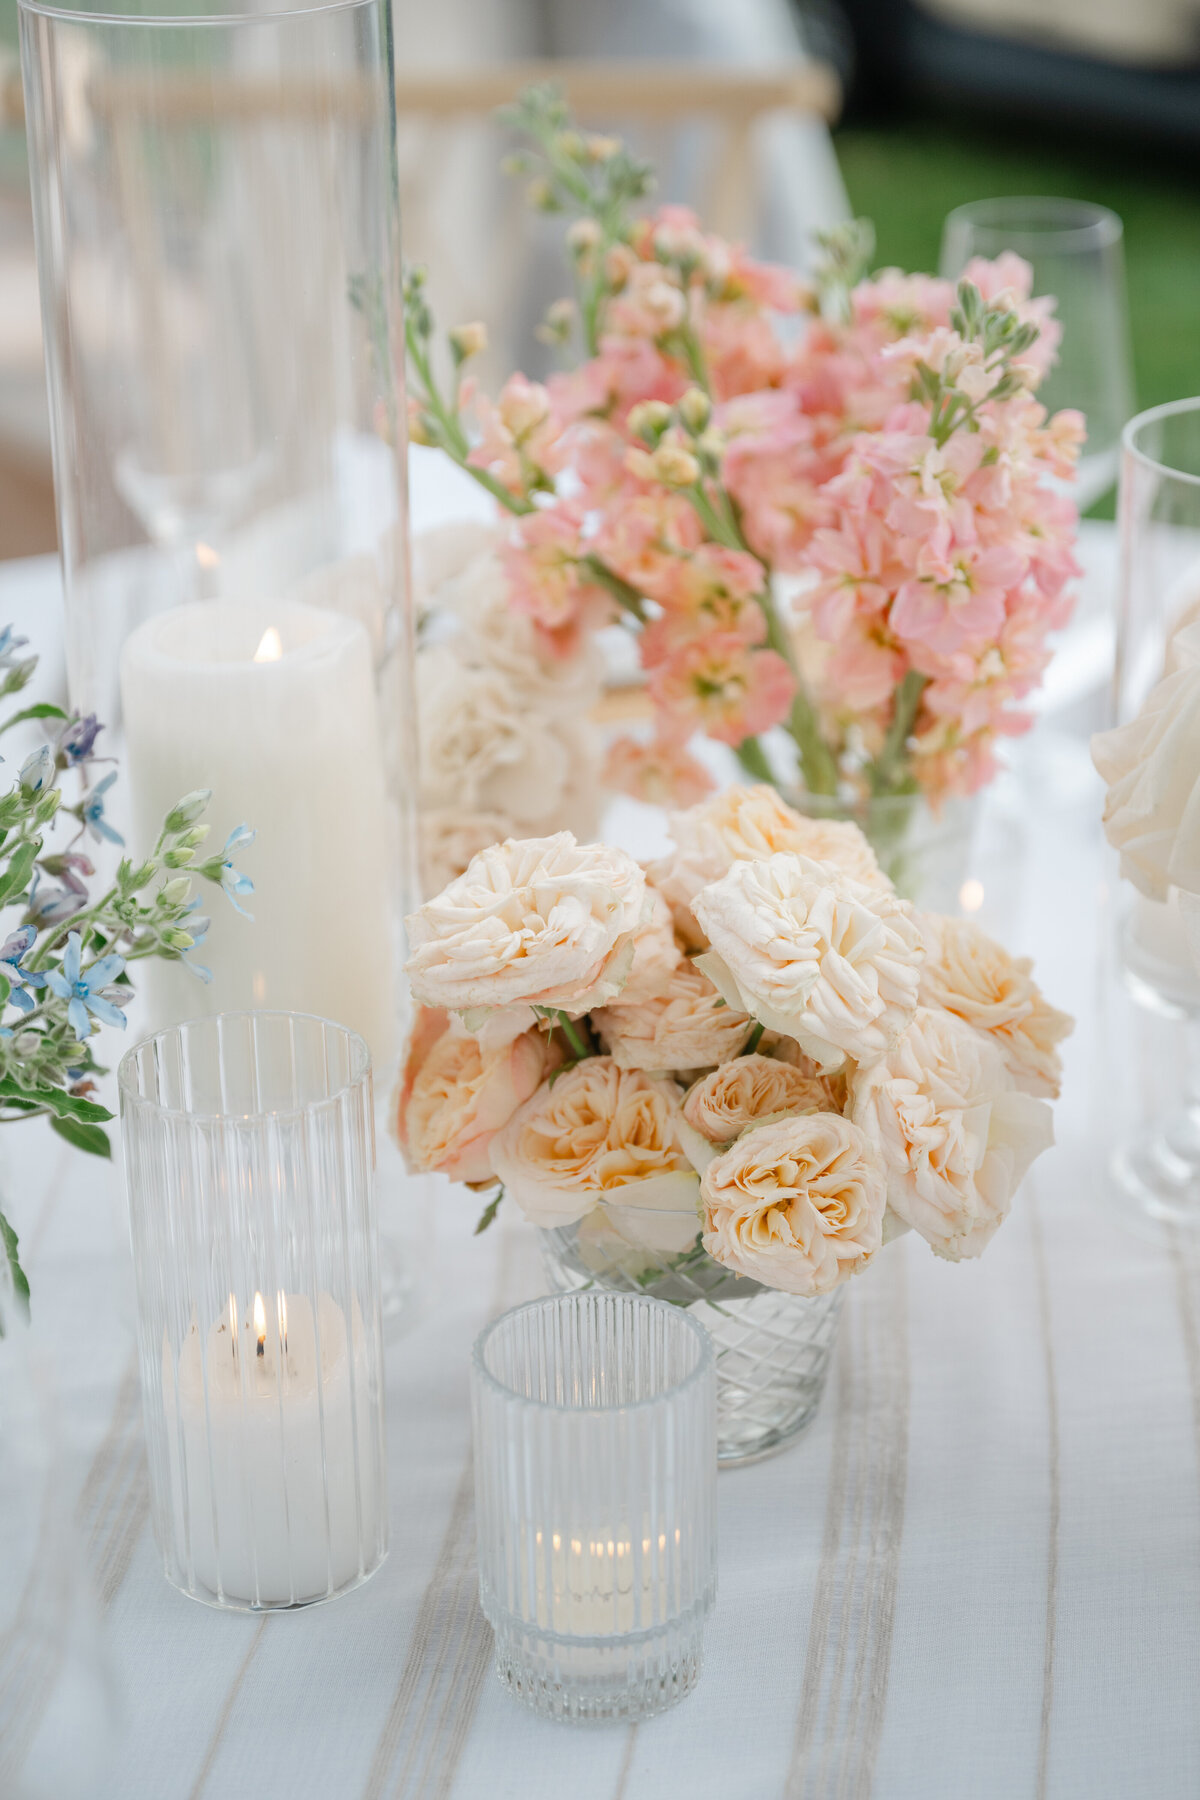 white-peach-flower-arrangements-votives-ct-wedding-reception-centerpiece